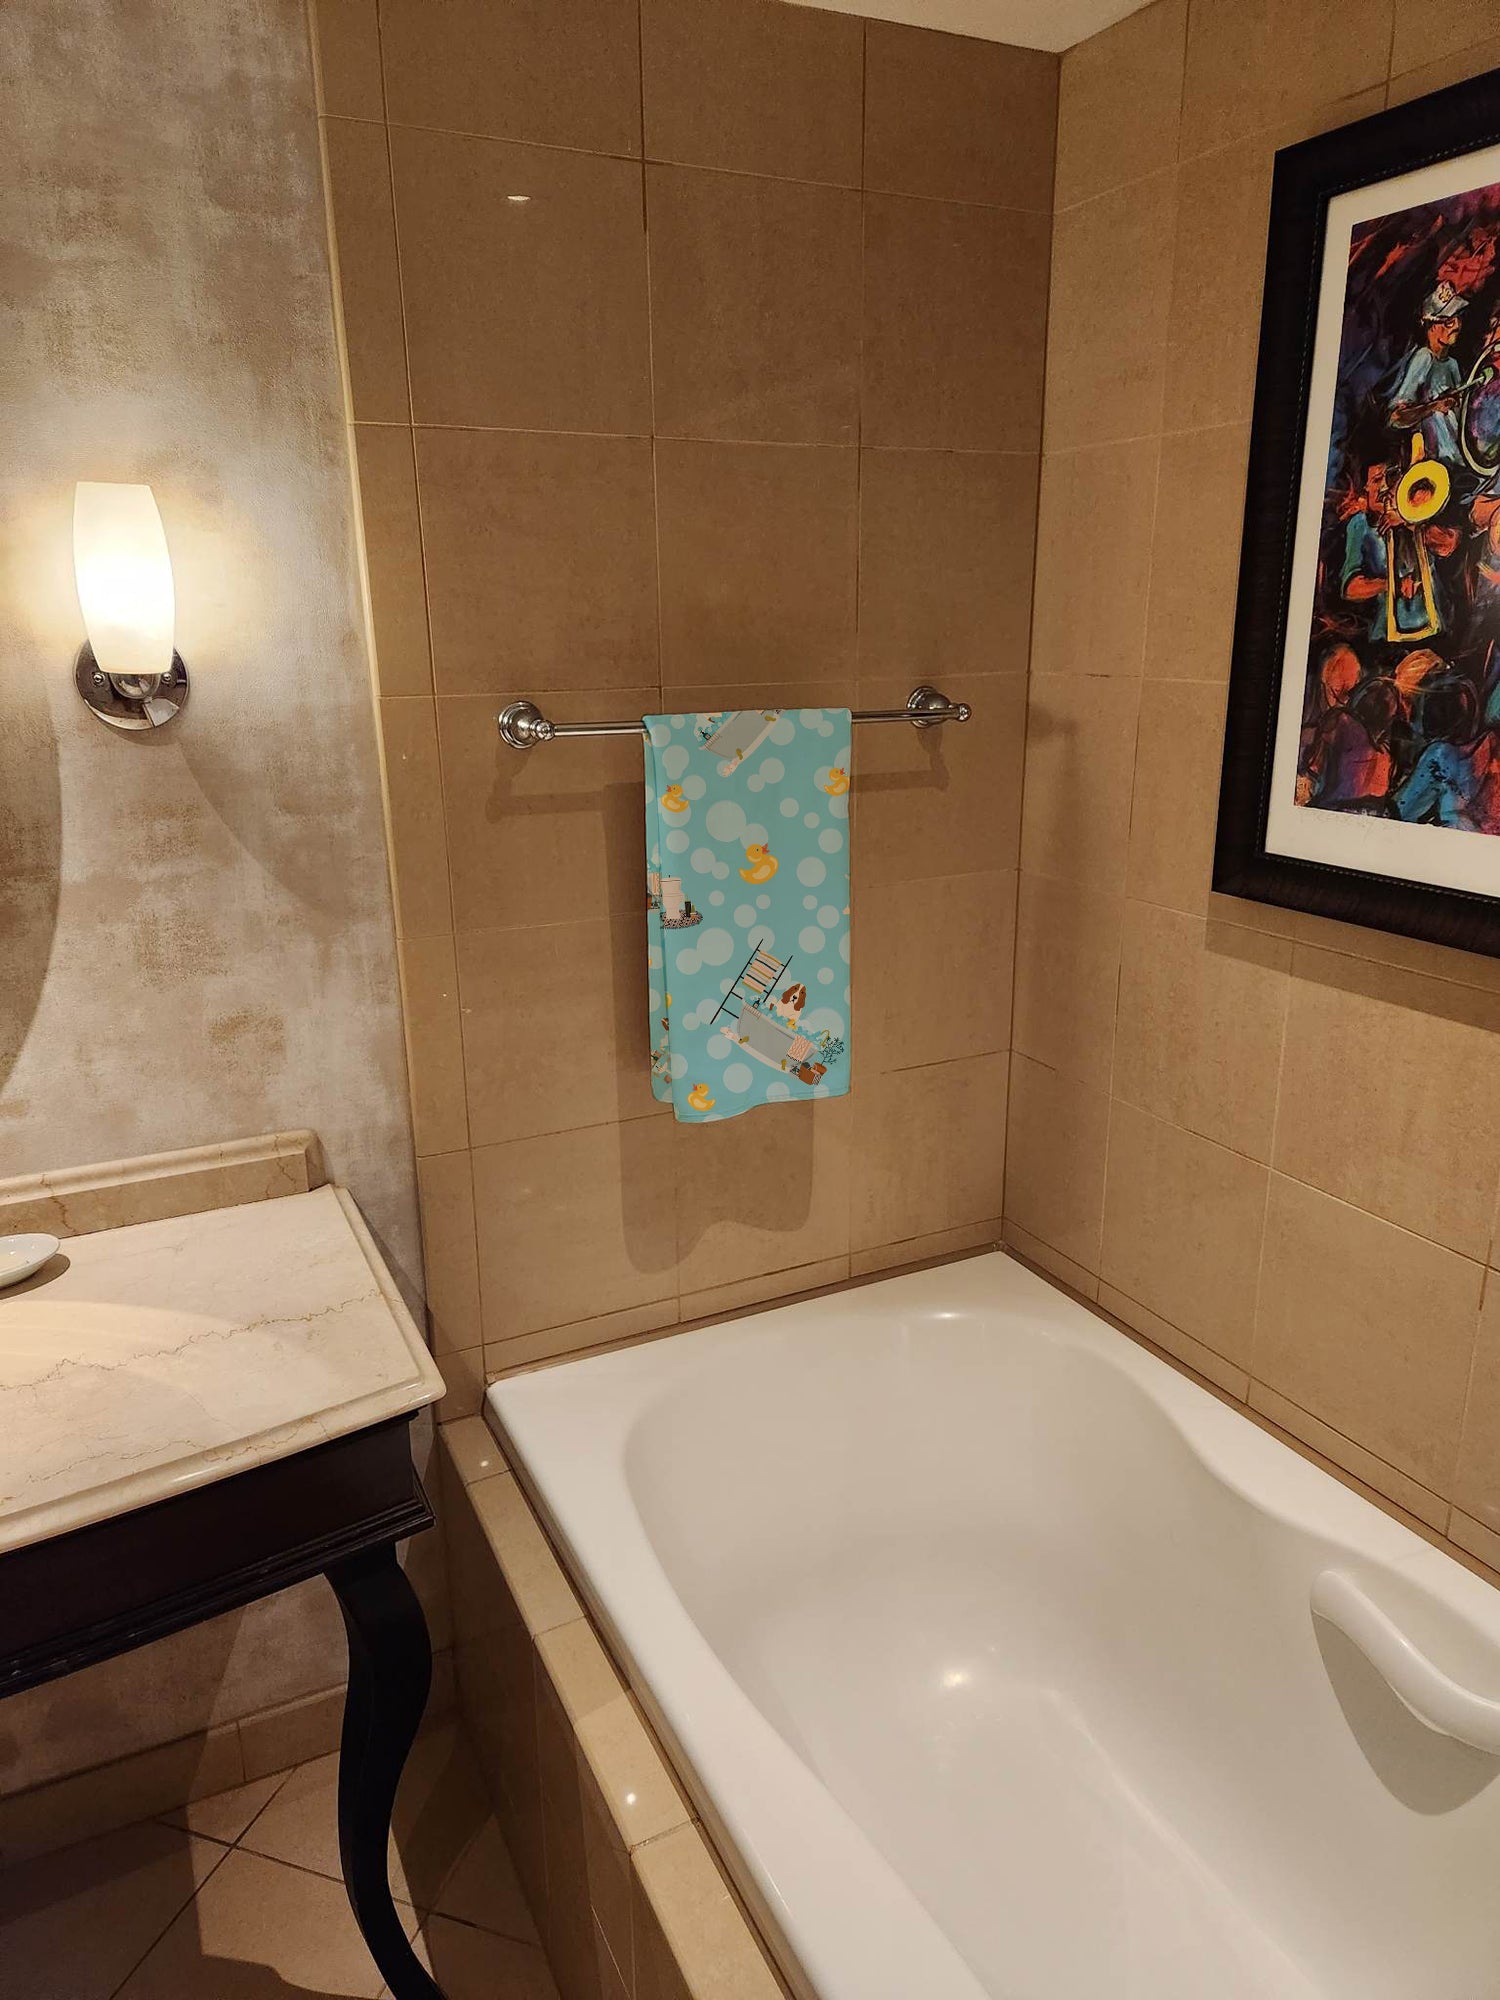 Basset Hound in Bathtub Bath Towel Large